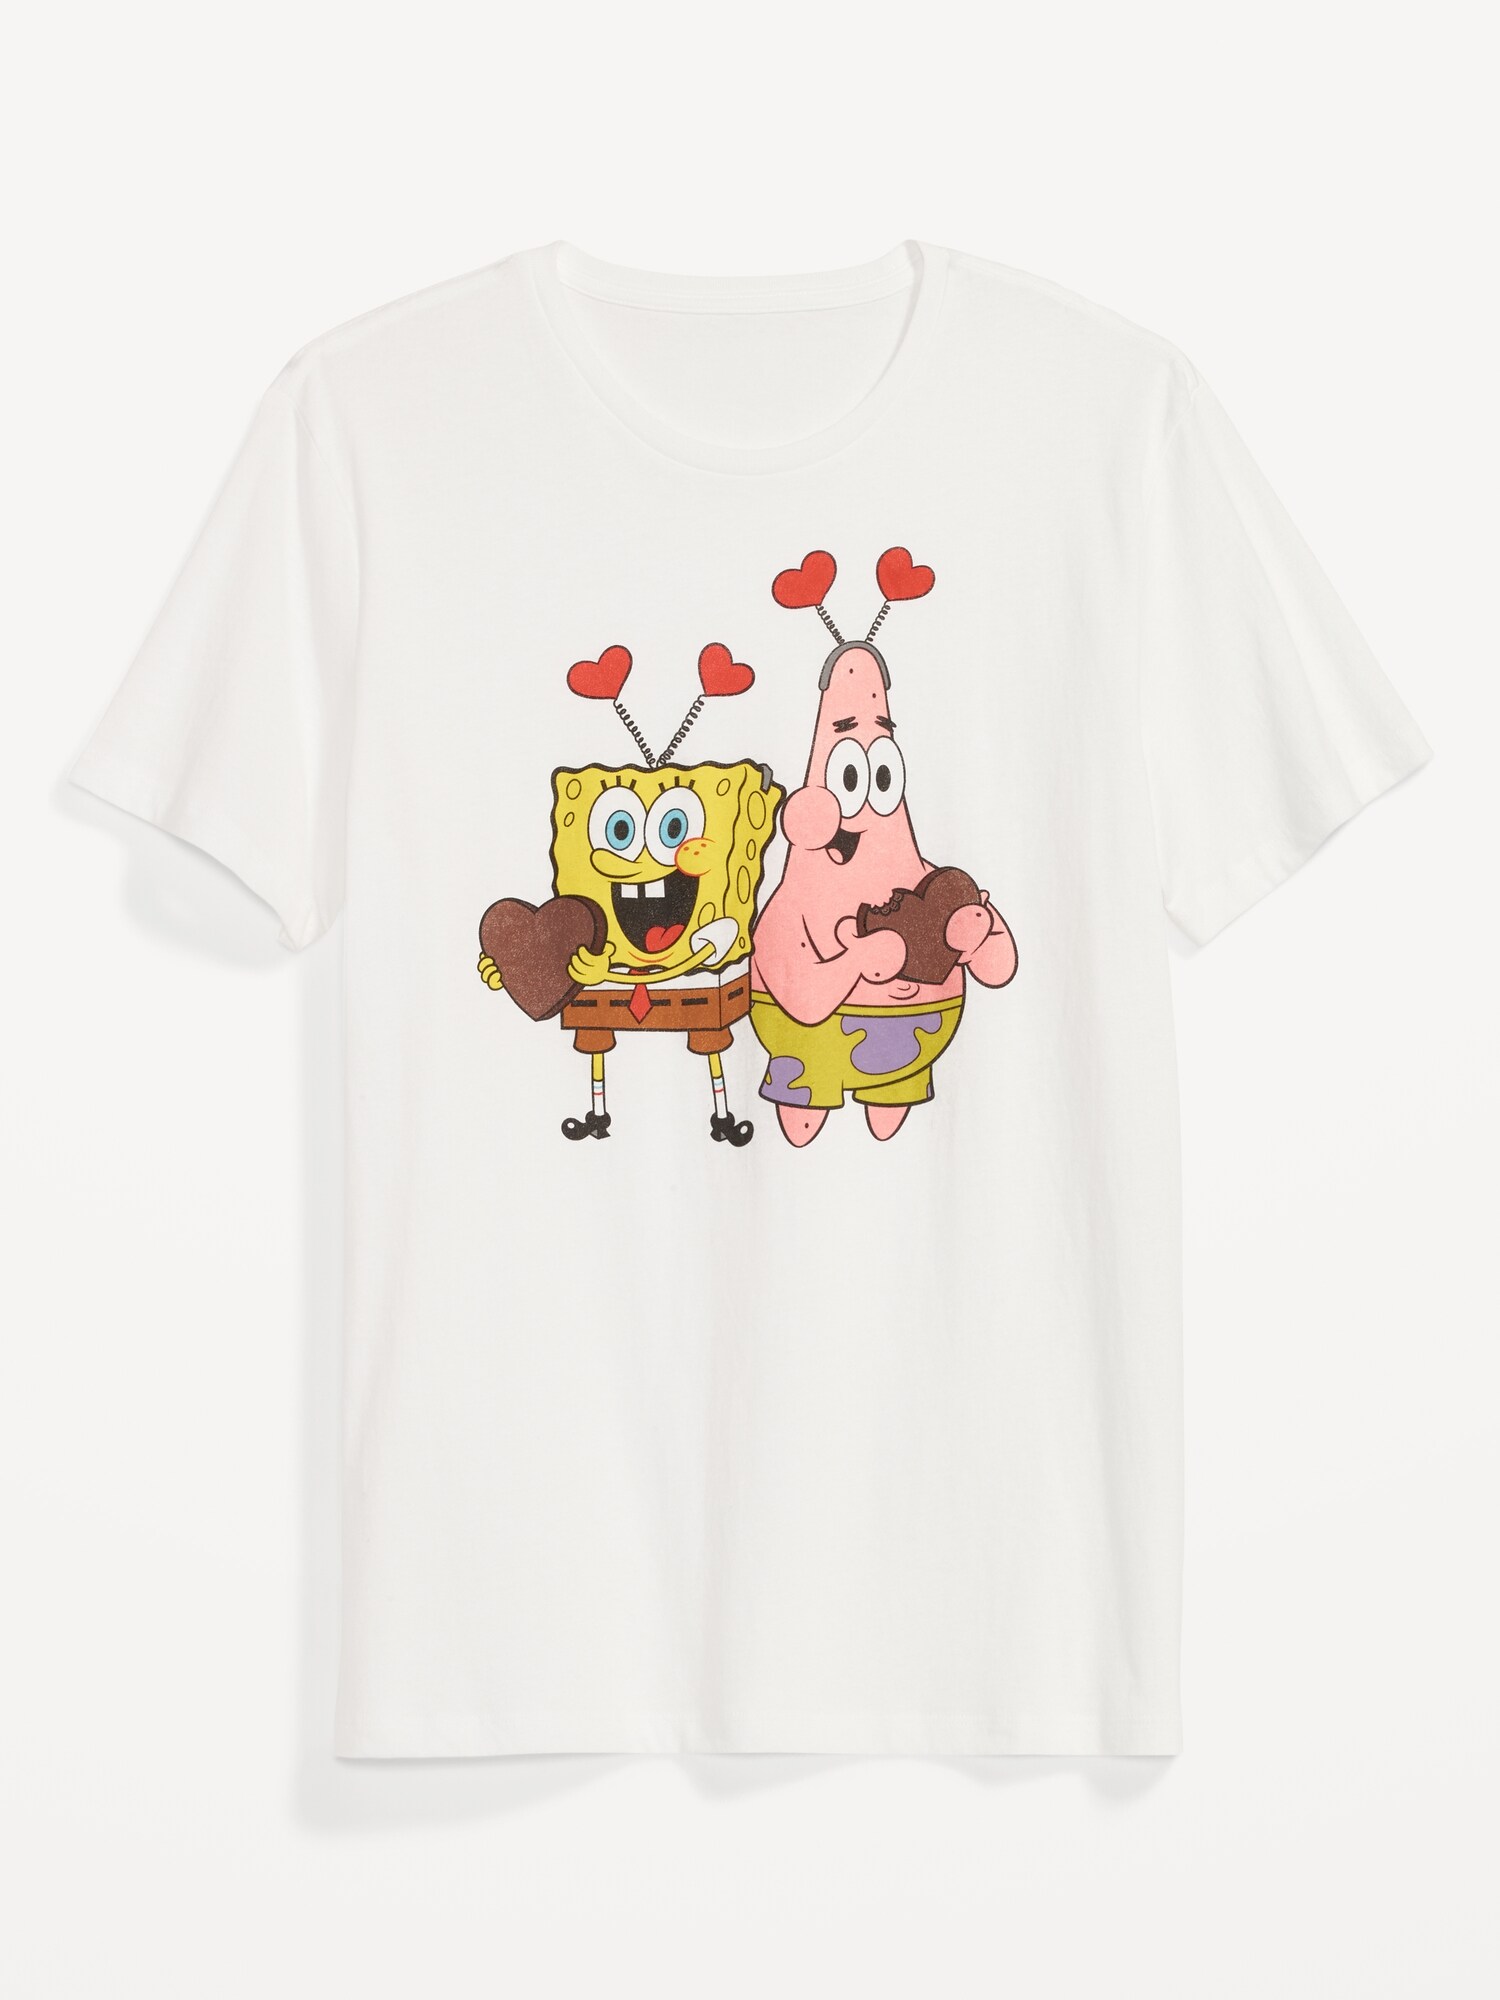 Spongebob And Patrick Horizontal Line Shirt, Tank Top And Leggings